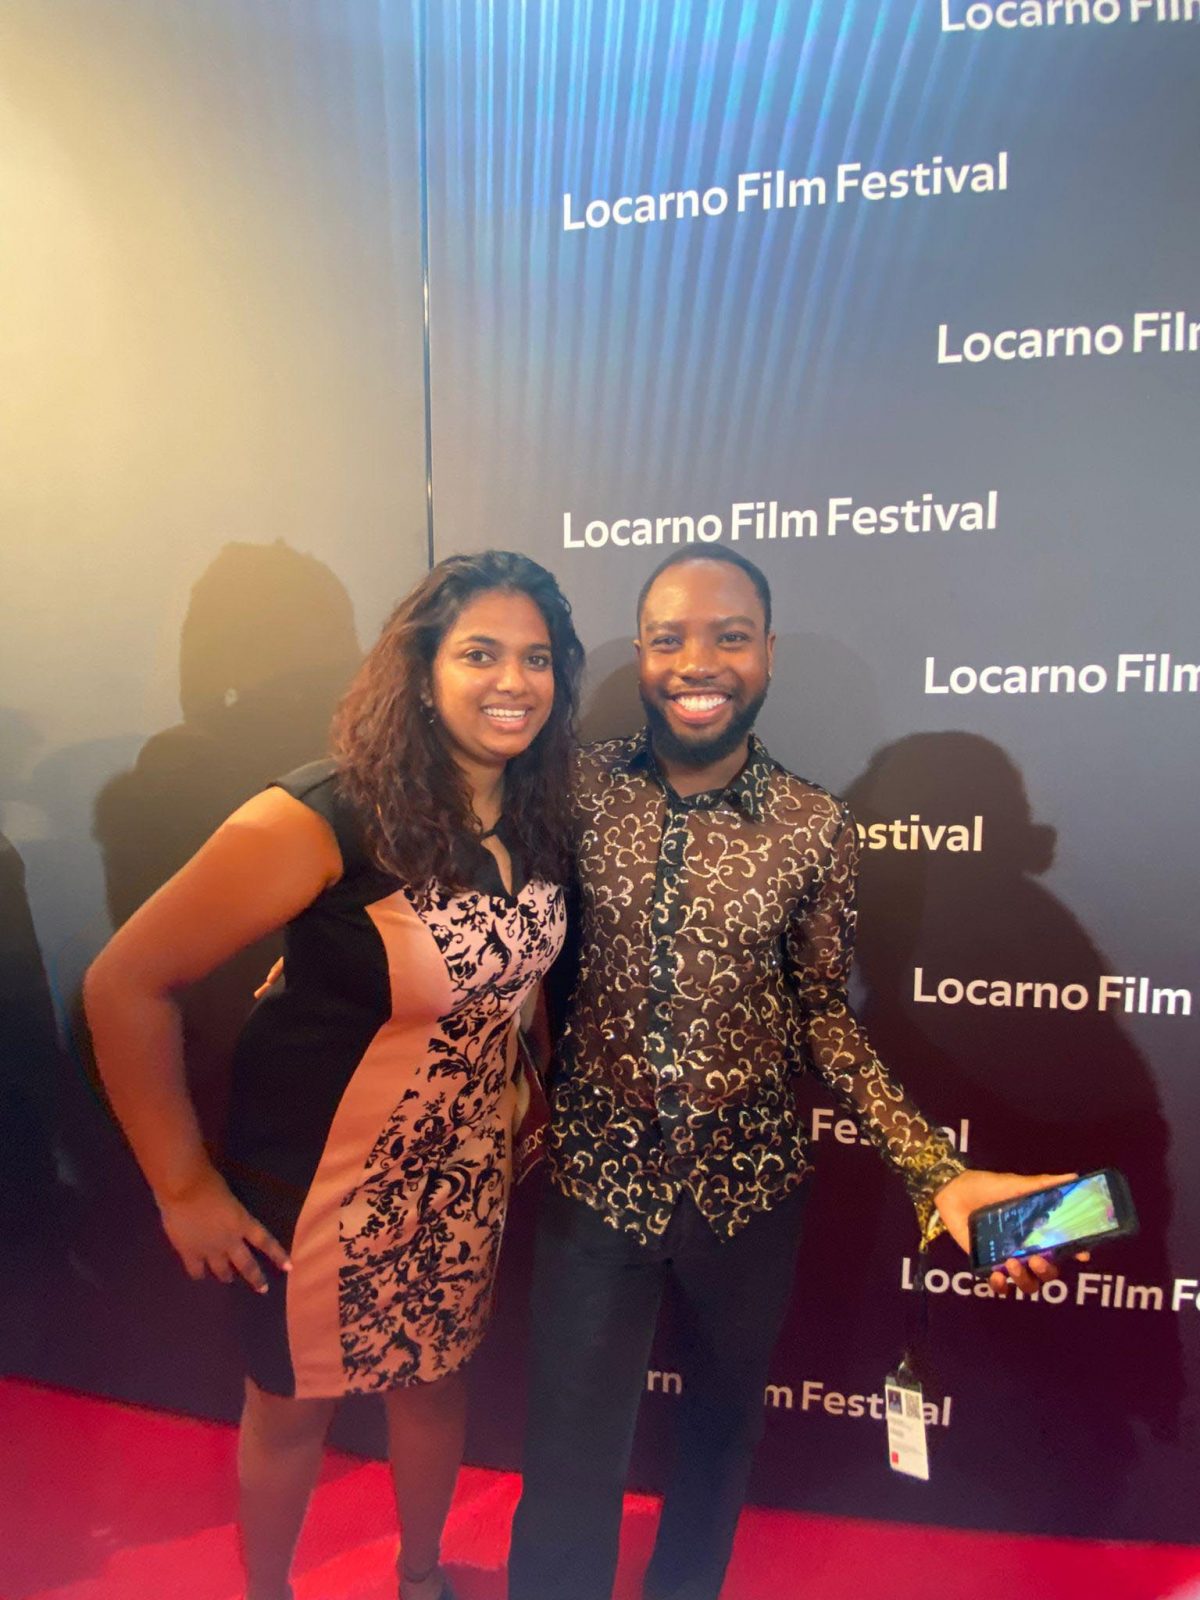 Suriname Filmmaker Ananta Khemdraj and Guyanese Filmmaker Nickose Layne on the red carpet at the Locarno Film Festival
